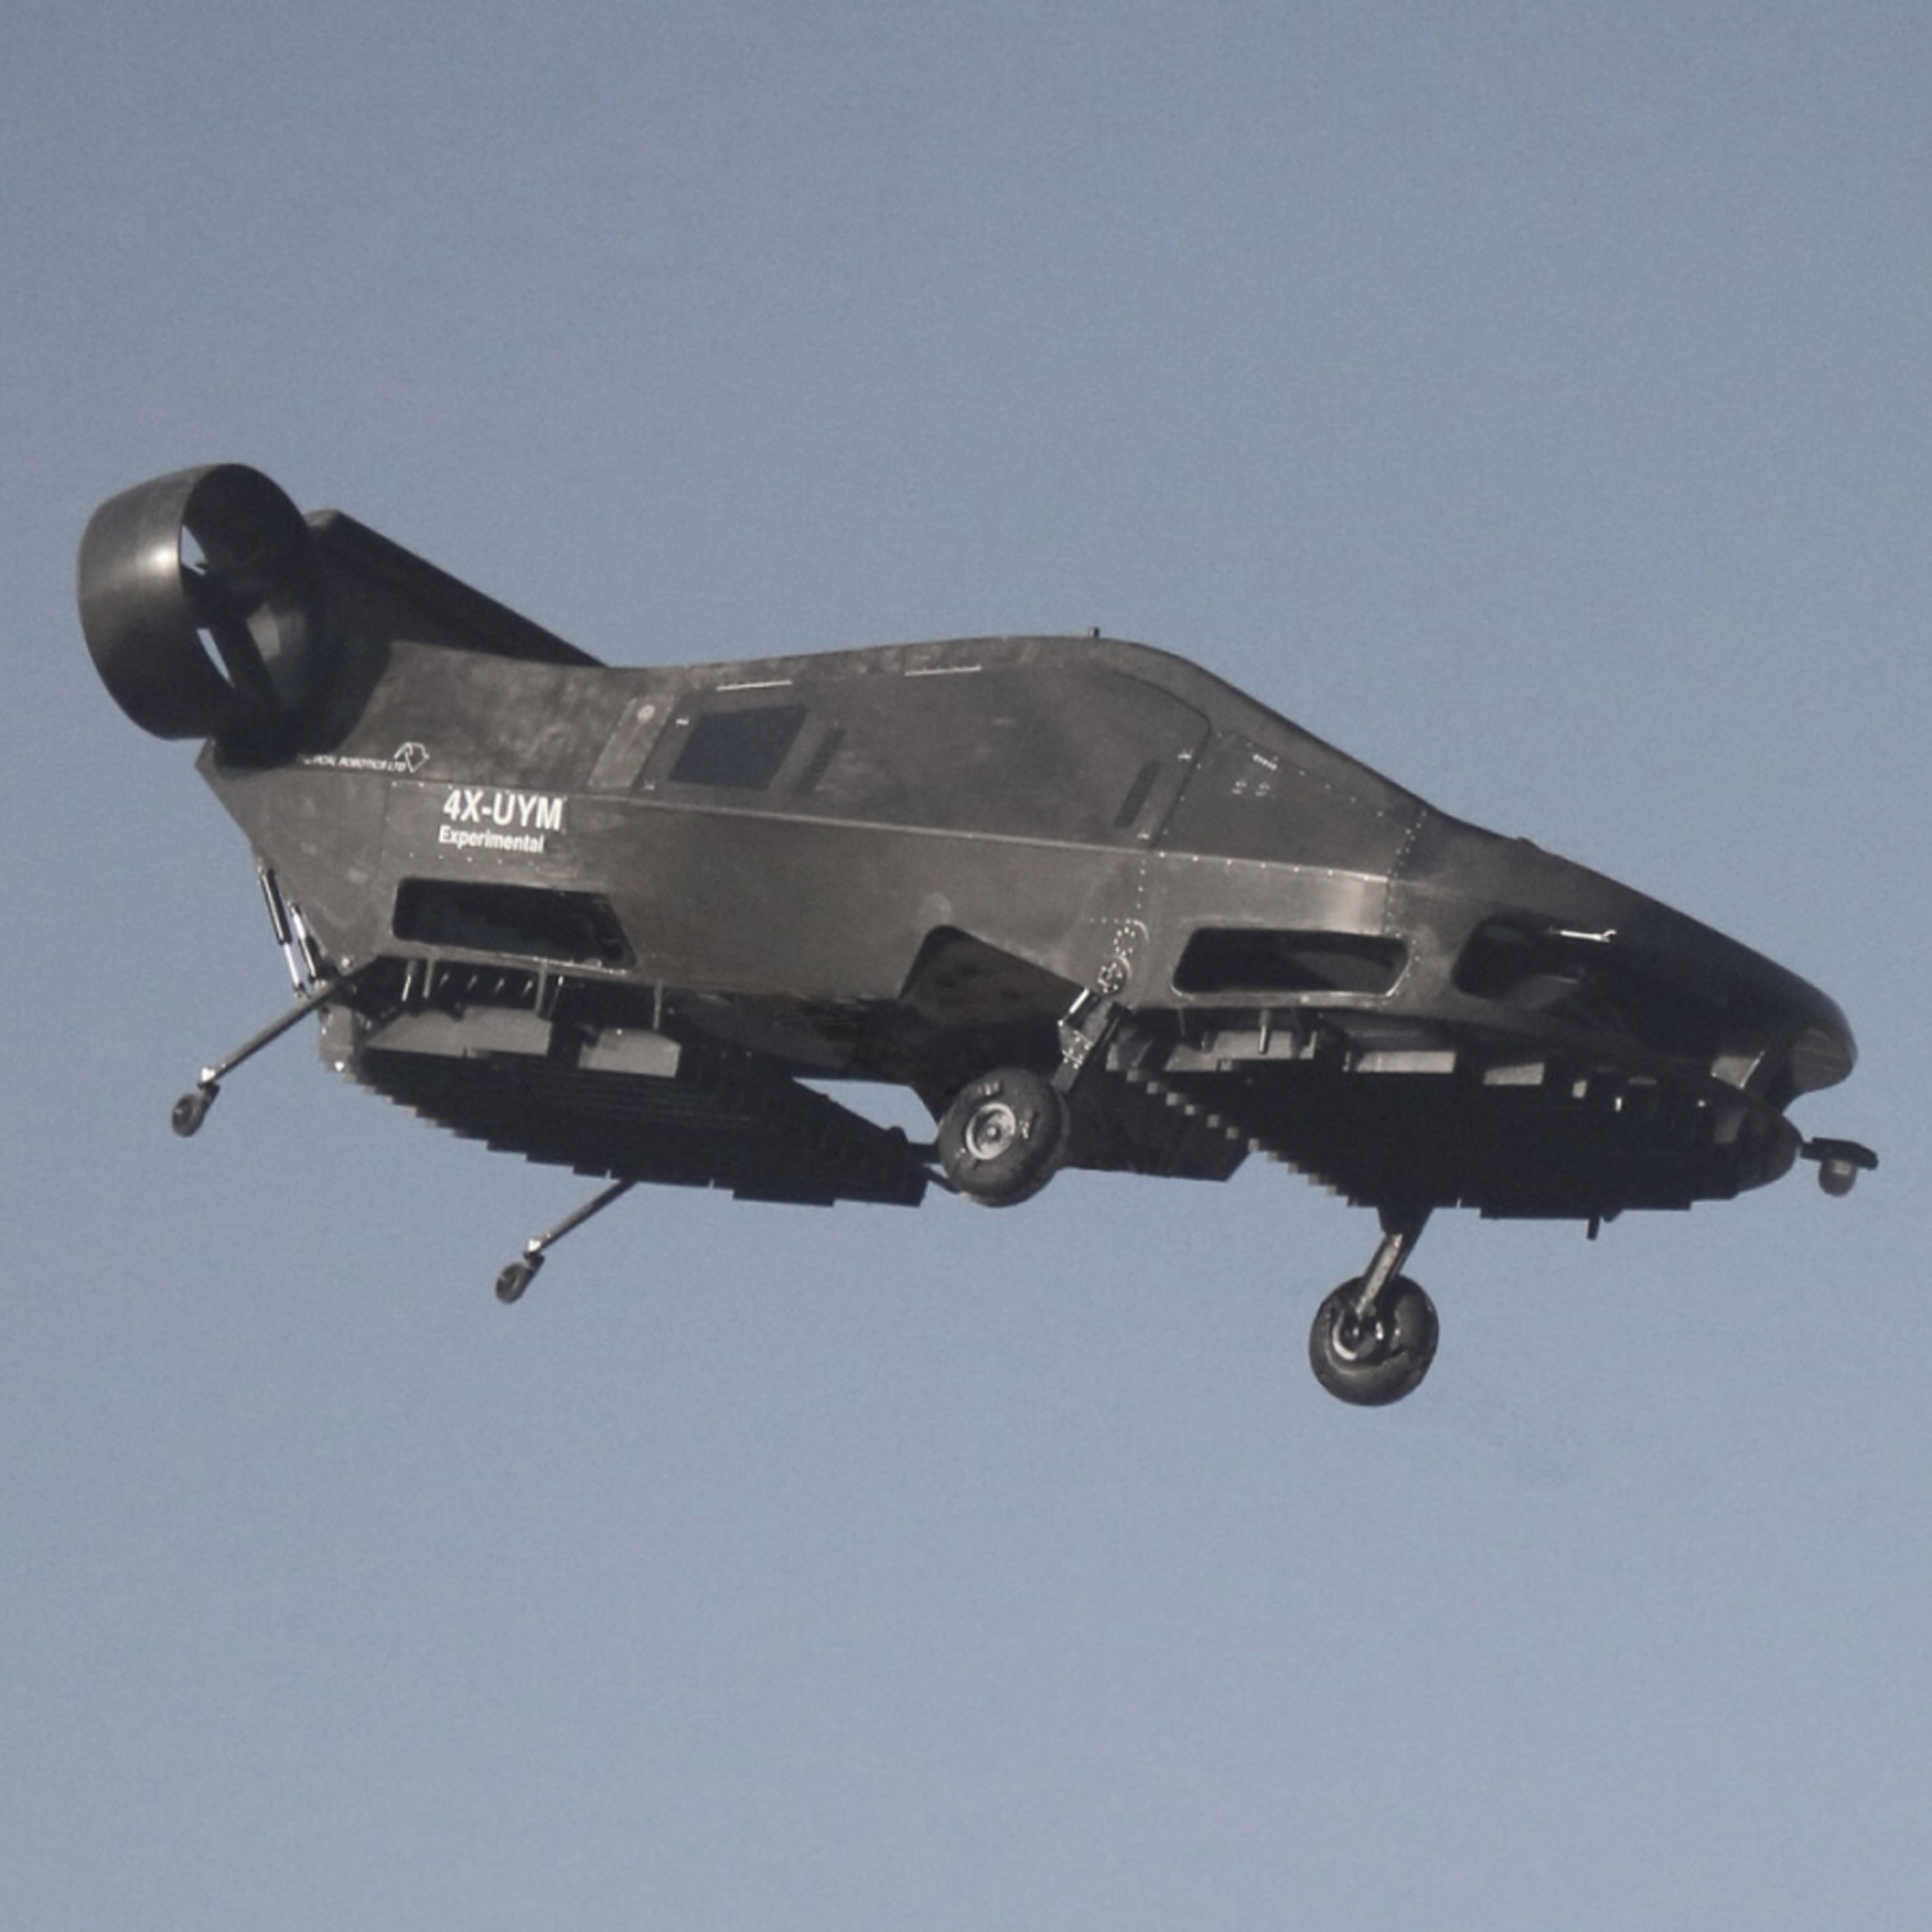 Cormorant UAV makes its first flight